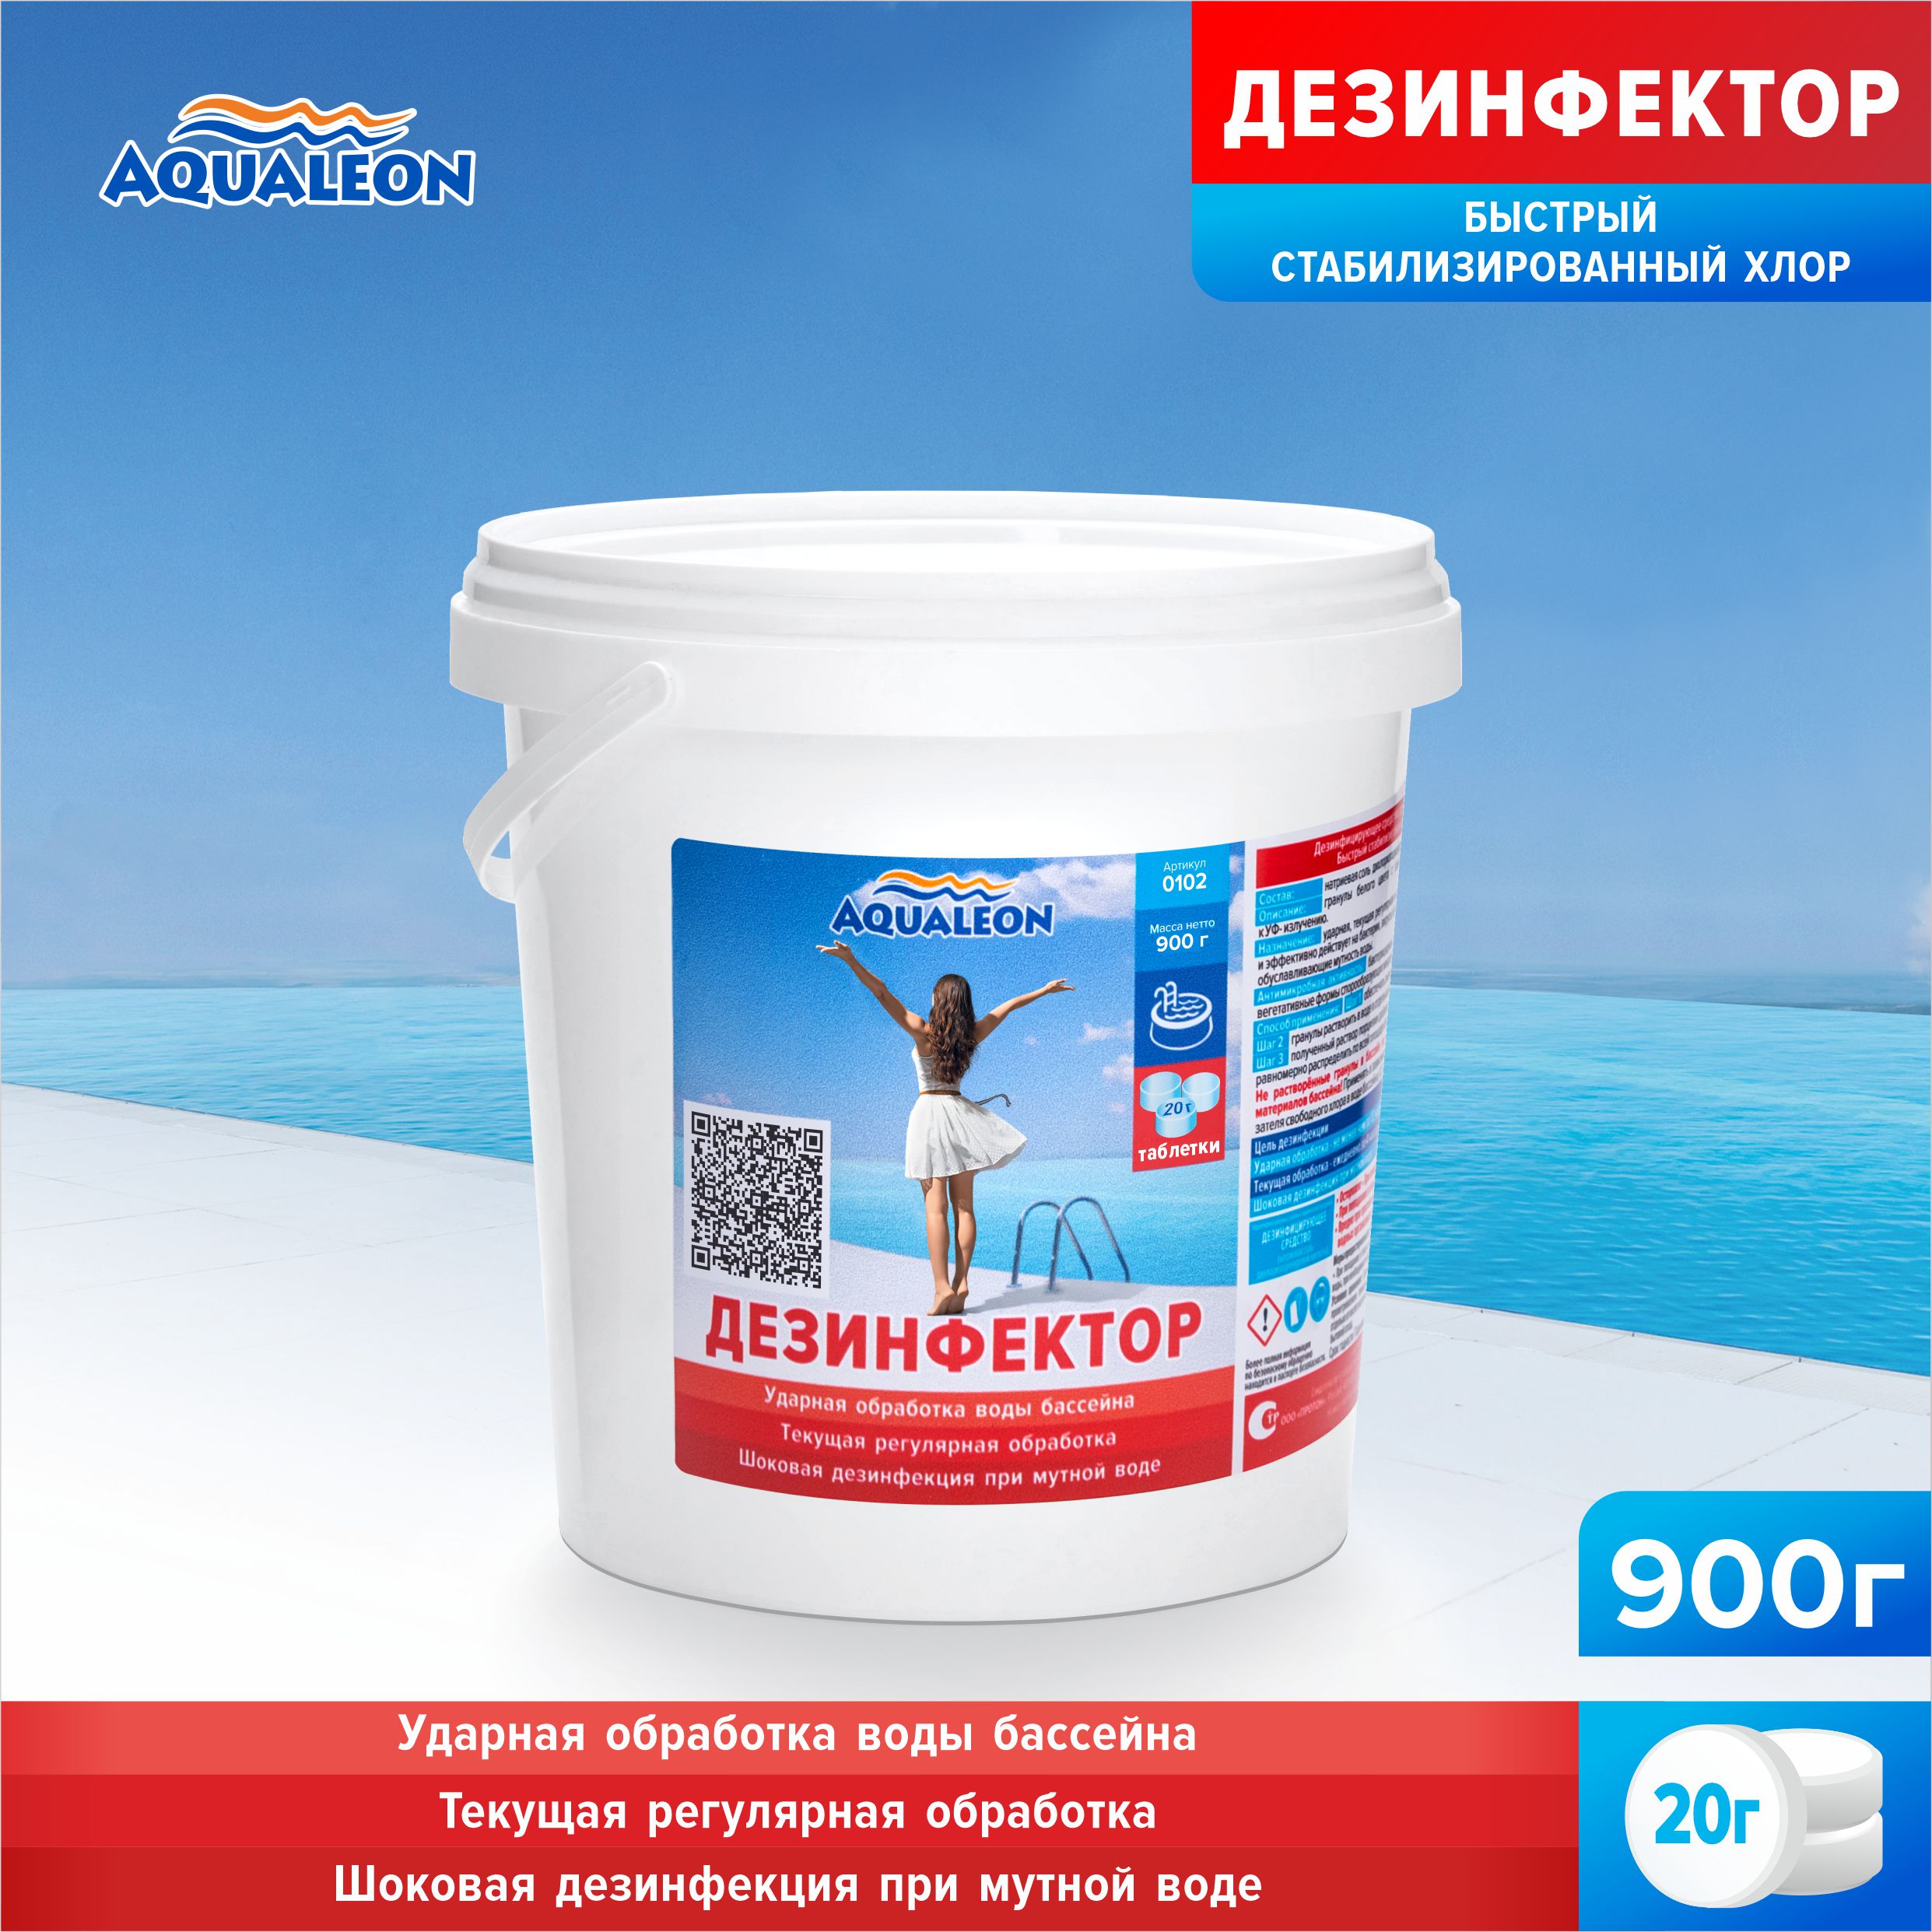 Дезинфектор Aqualeon 0102 быстрый хлор в таблетках по 20 гр., 0,9 кг в ведре